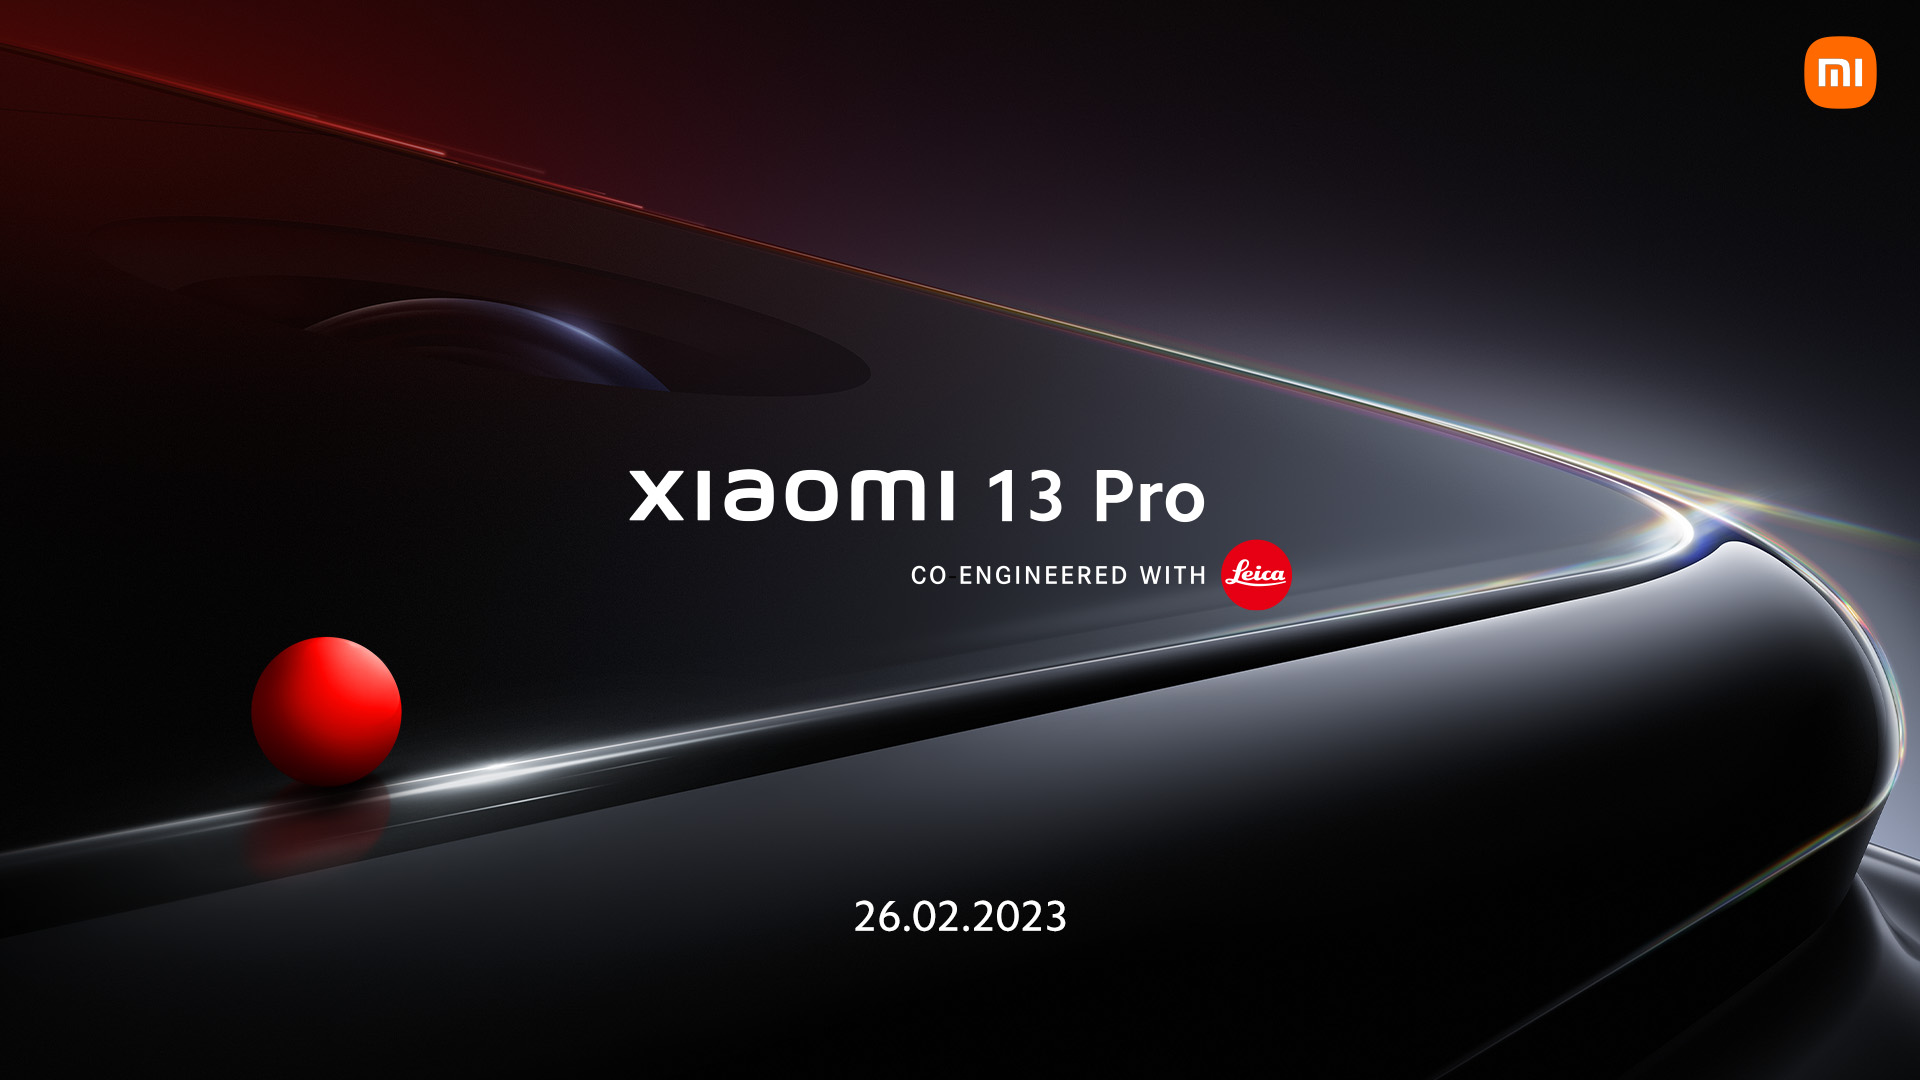 Xiaomi 13 Pro invite image resize